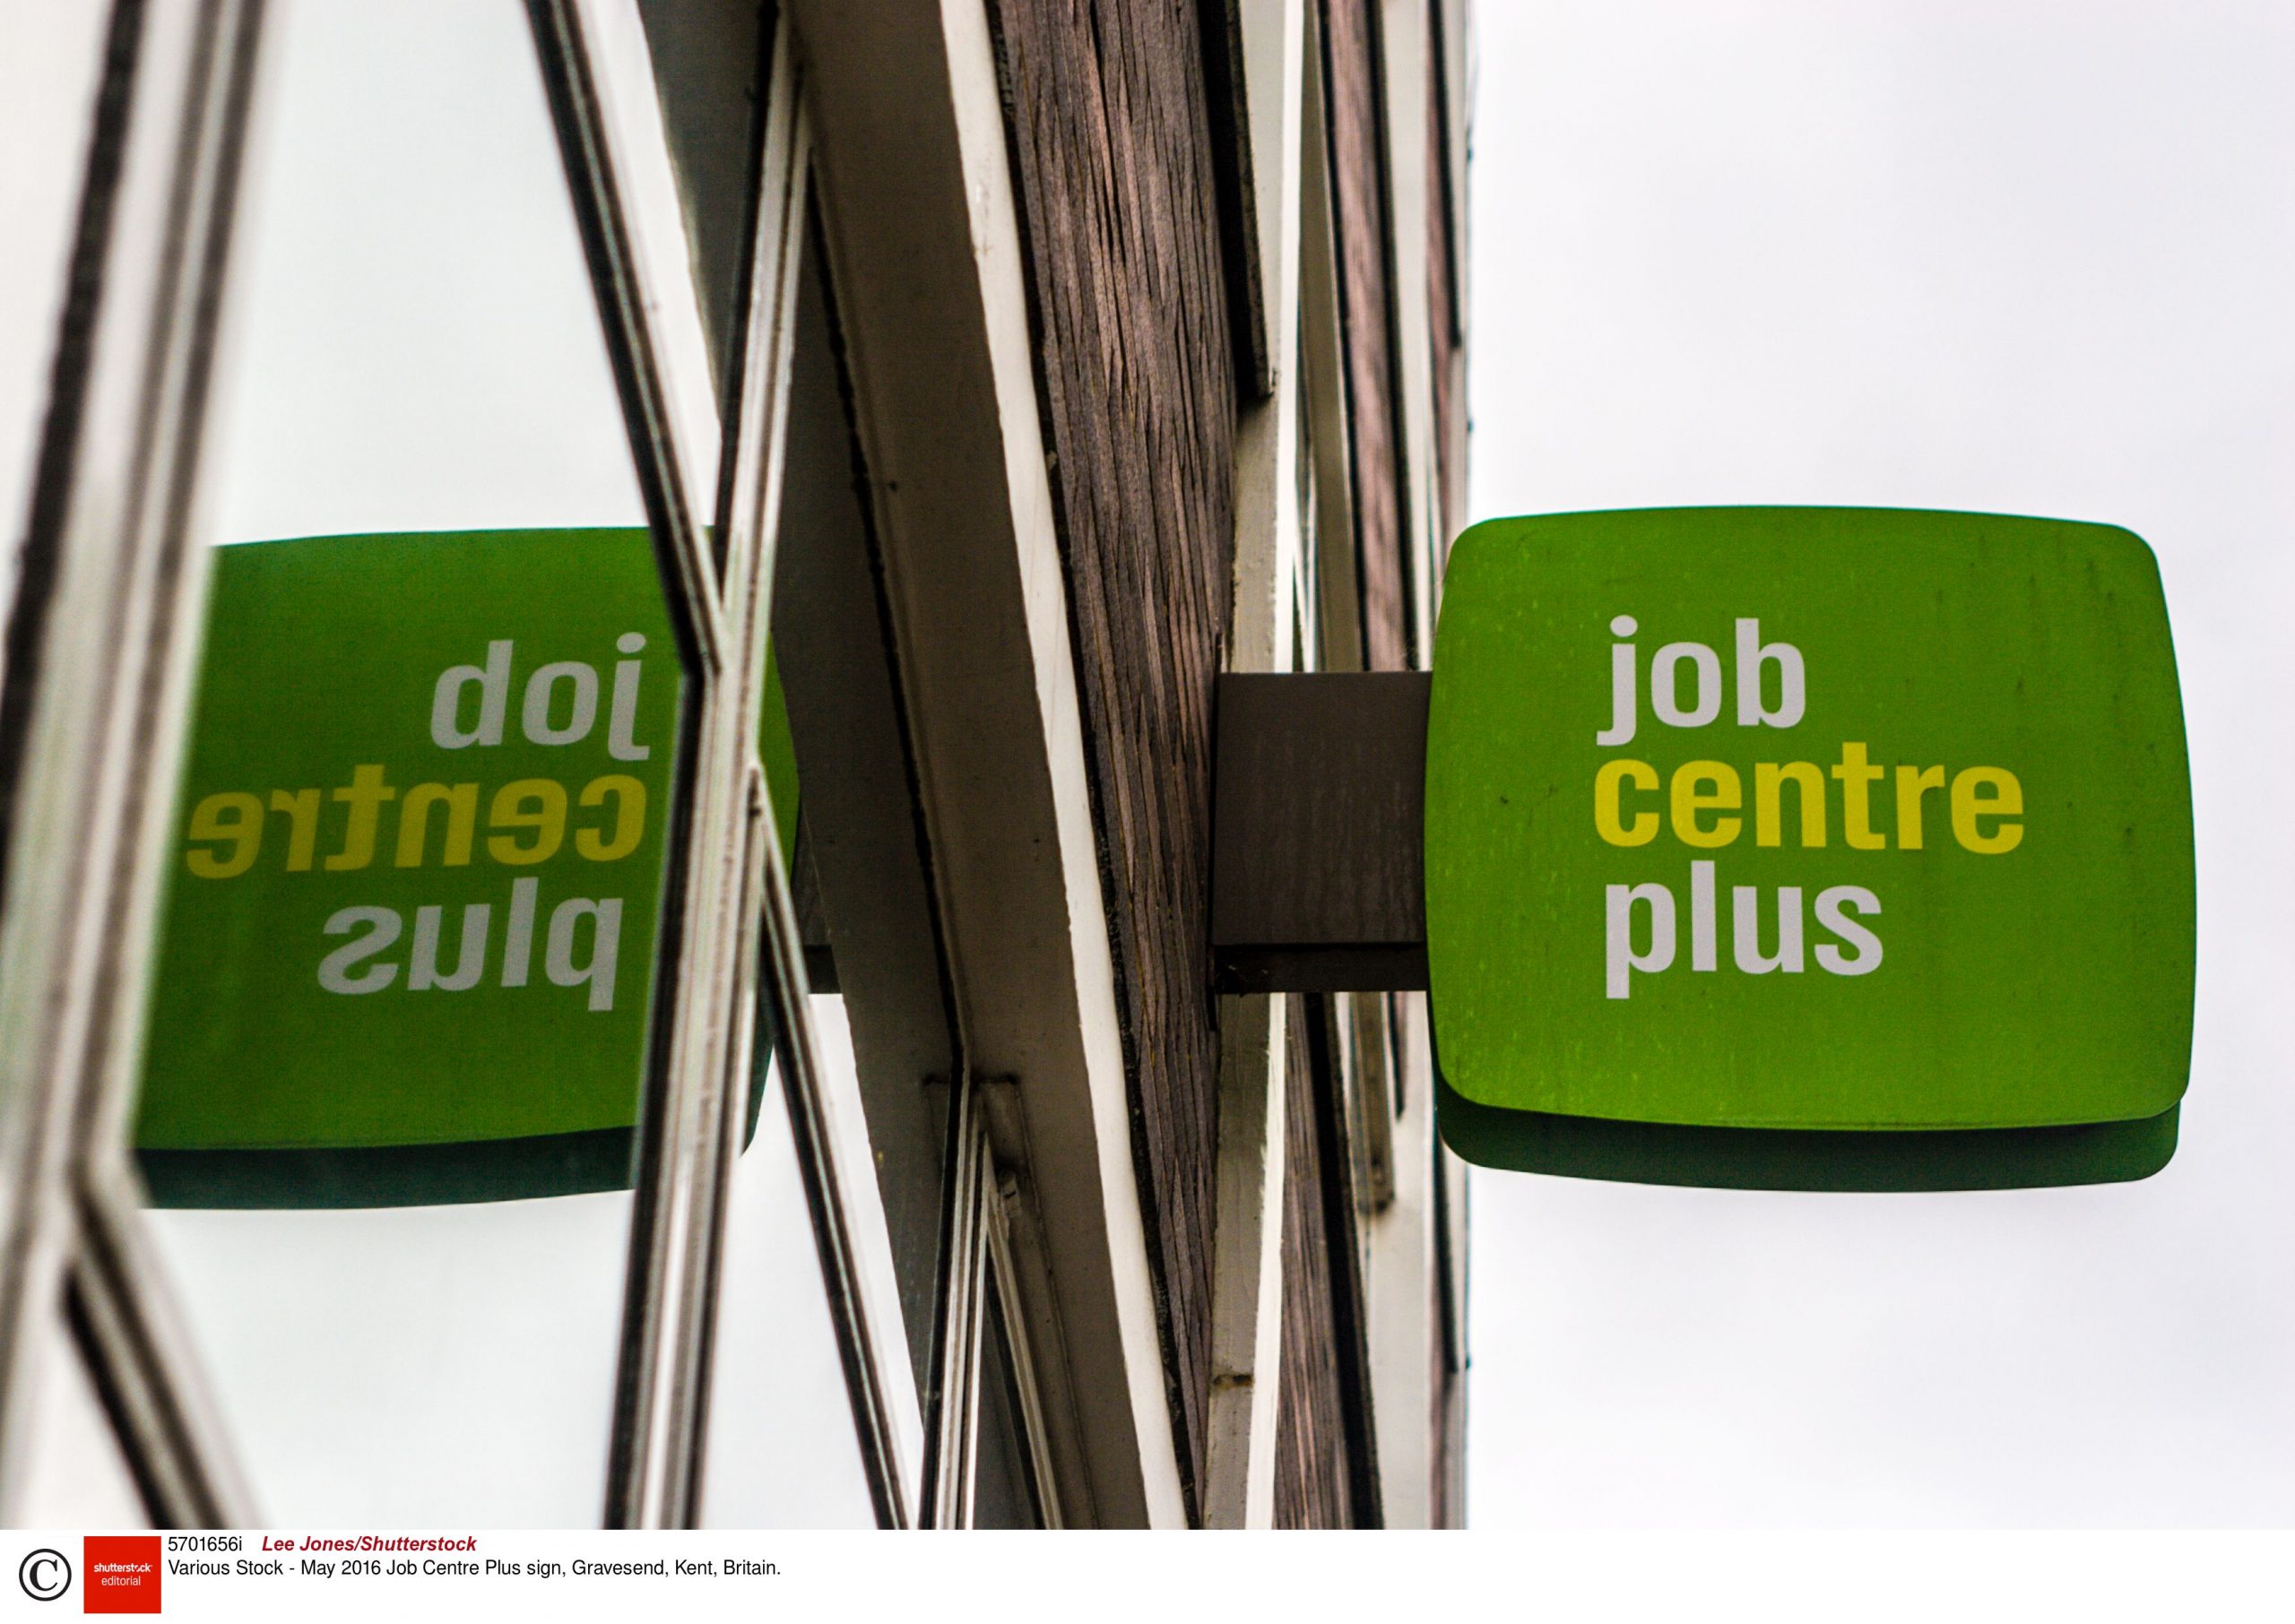 Coronavirus: UK job vacancies fall while benefit claims soar